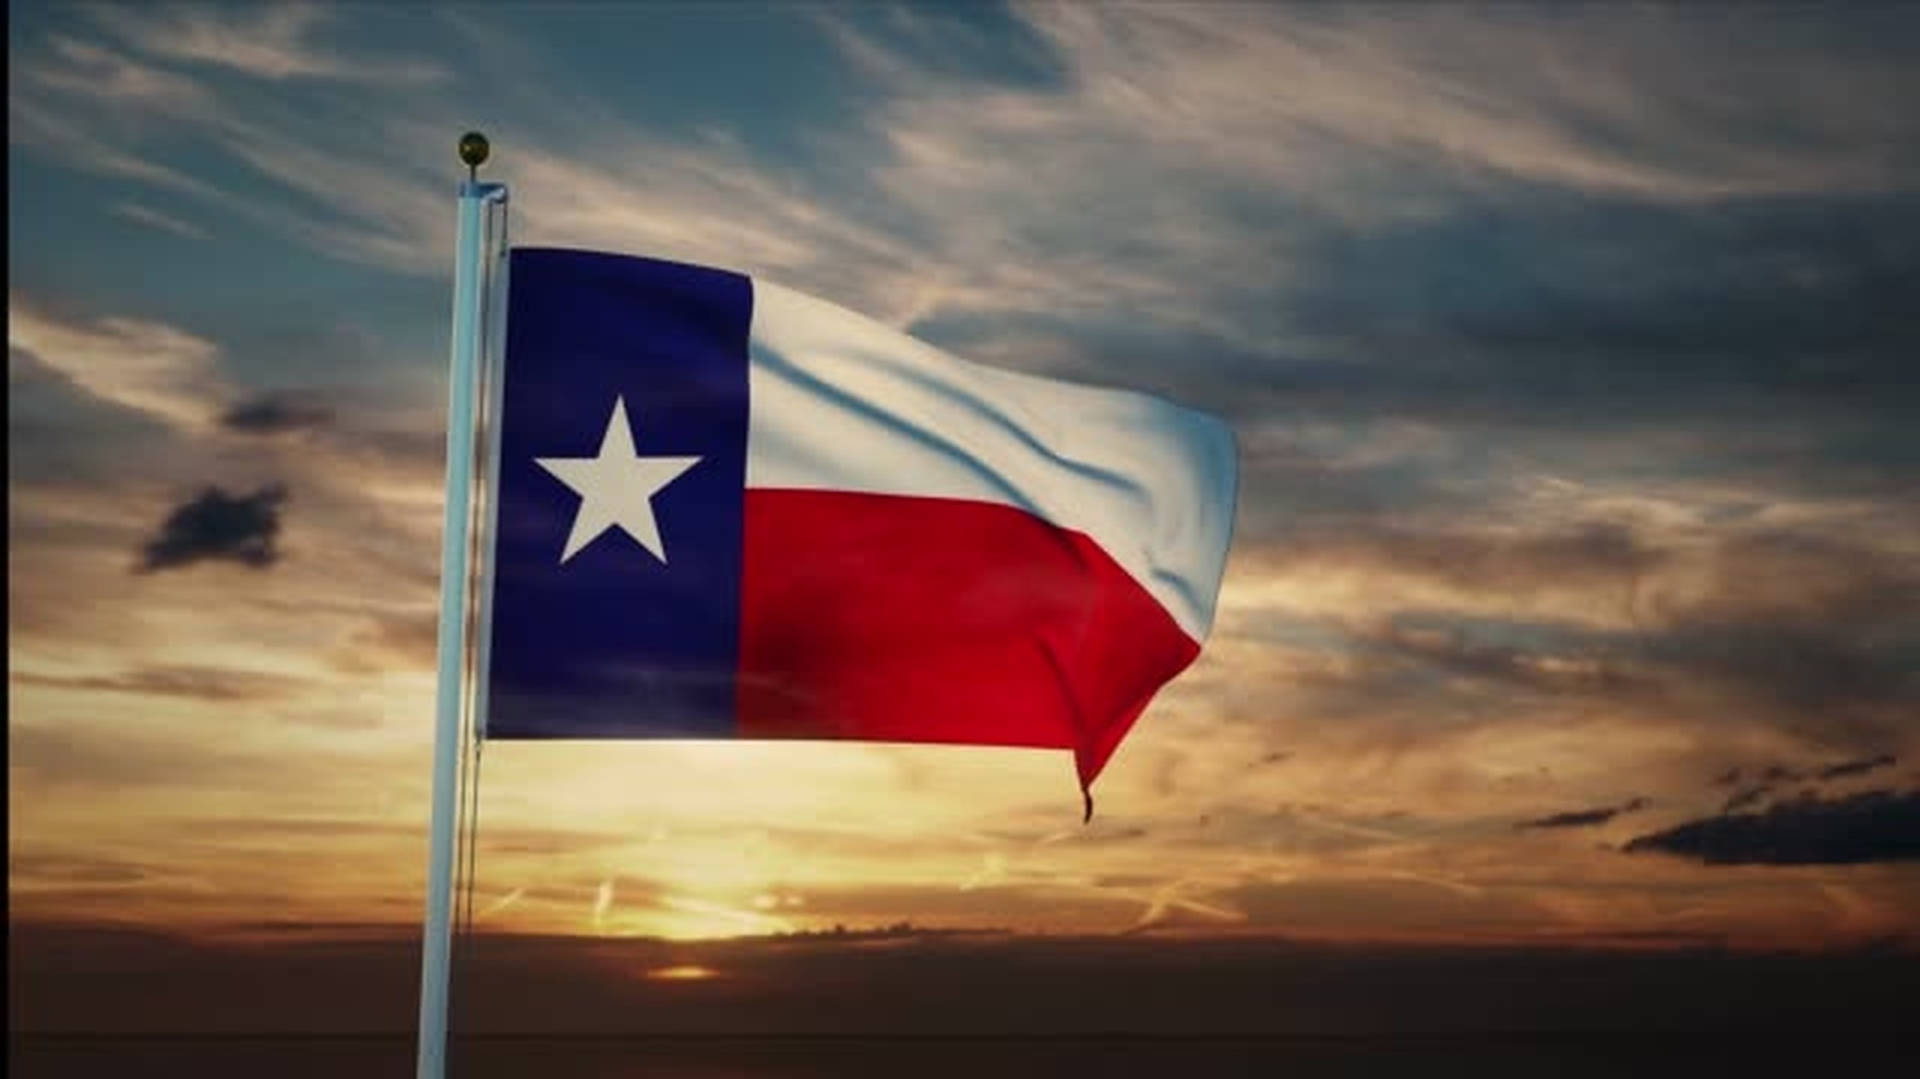 Mesmerizing Texas Flag